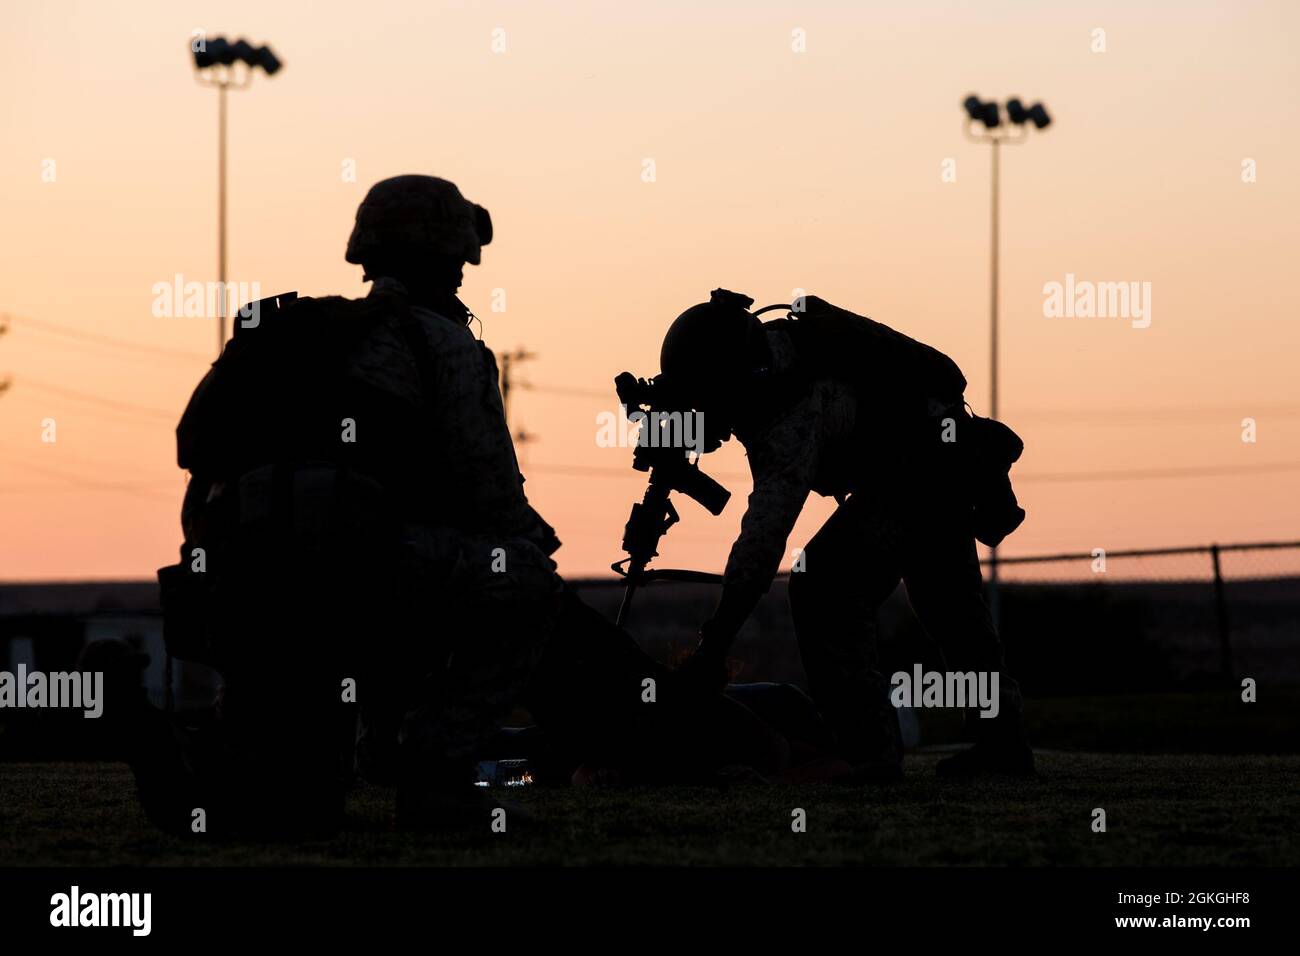 Los Marines de EE.UU. Asociados al Escuadrón Uno de Armas y Tácticas de Aviación Marina (MAWTS-1), detienen a un actor de rol, mientras conducen un ejercicio de operación de evacuación no combatiente, en apoyo del curso de Instructor de Armas y Tácticas (WTI) 2-21, en el Centro de Combate Aéreo-Terrestre del Cuerpo de Marina, en Twentynine Palms, California, 16 de abril de 2021. El curso WTI es un evento de capacitación de siete semanas organizado por MAWTS-1, que proporciona capacitación táctica avanzada estandarizada y certificación de las calificaciones de instructores de unidad para apoyar la capacitación y preparación de la aviación marina, y ayuda en el desarrollo y empleo de armas de aviación y. Foto de stock